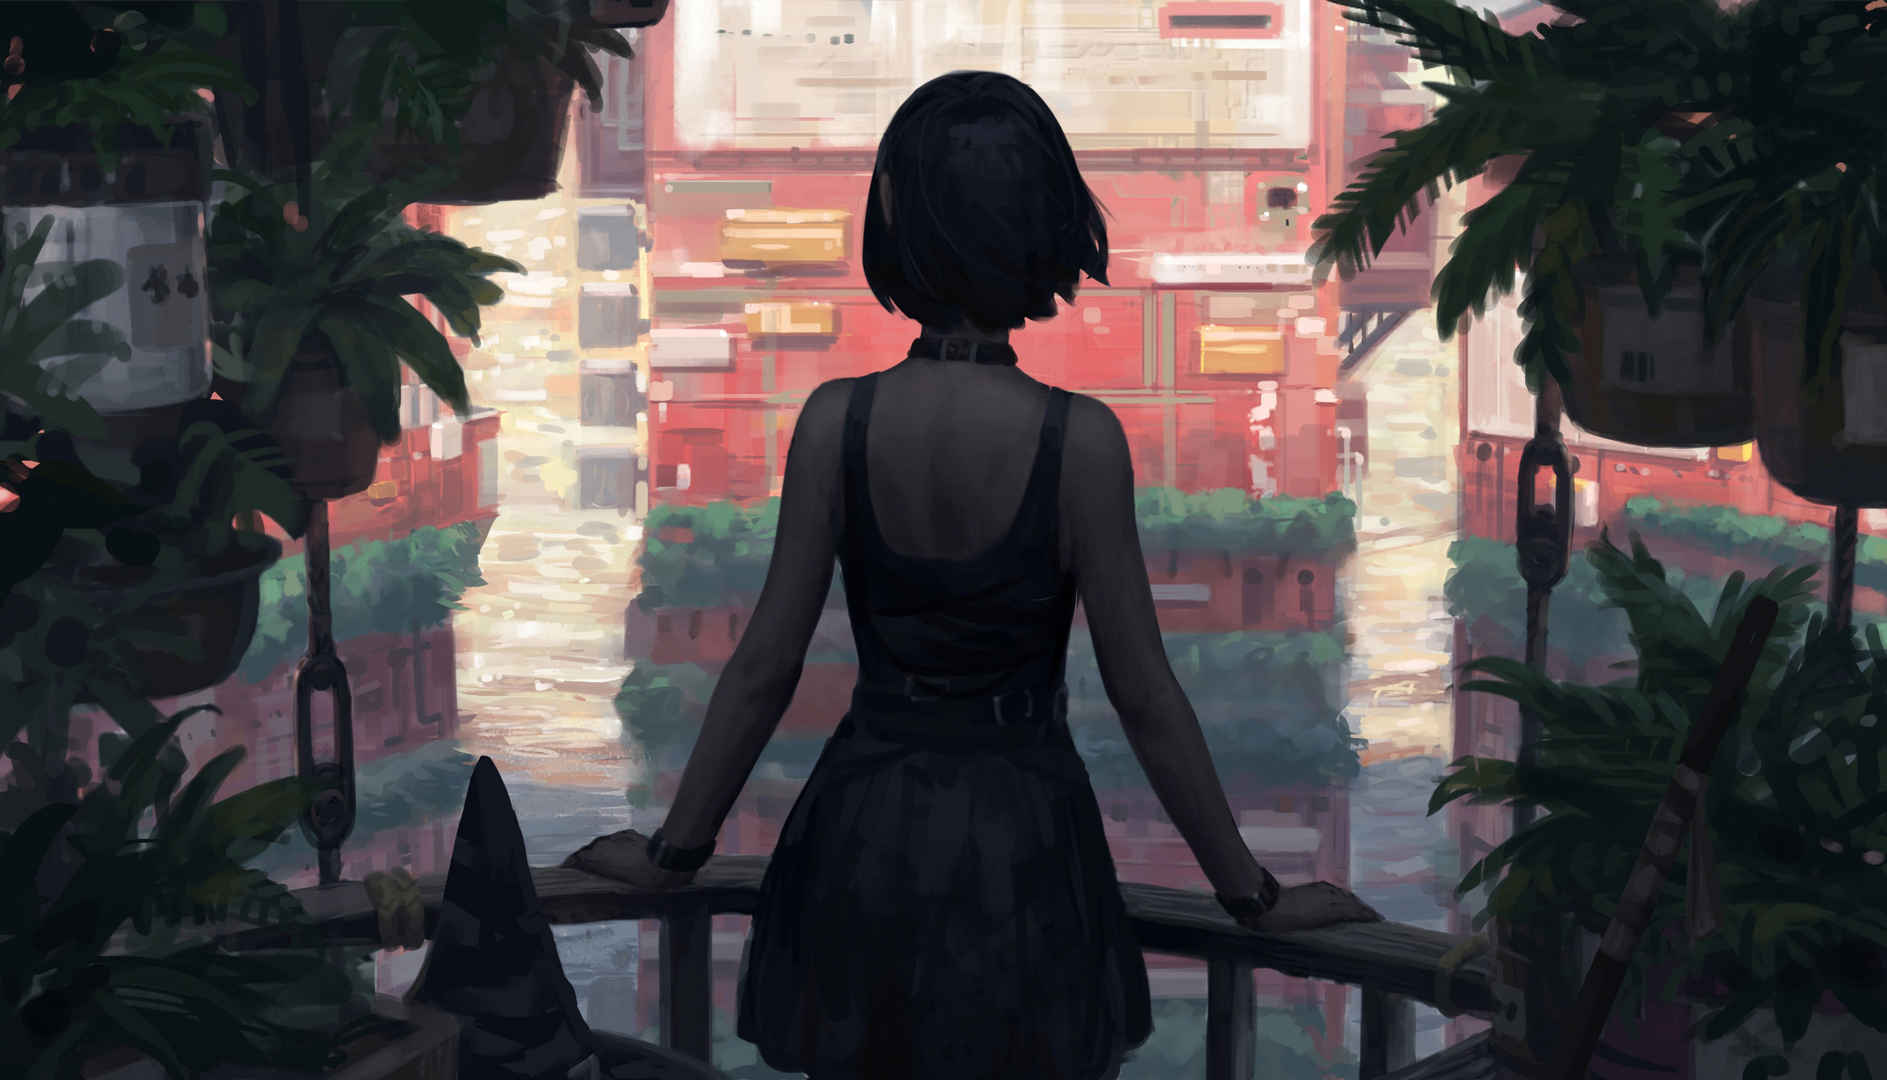 女孩短发 黑发 背部 后背 连衣裙 植物 阳台 建筑 绘画插图4k动漫壁纸-